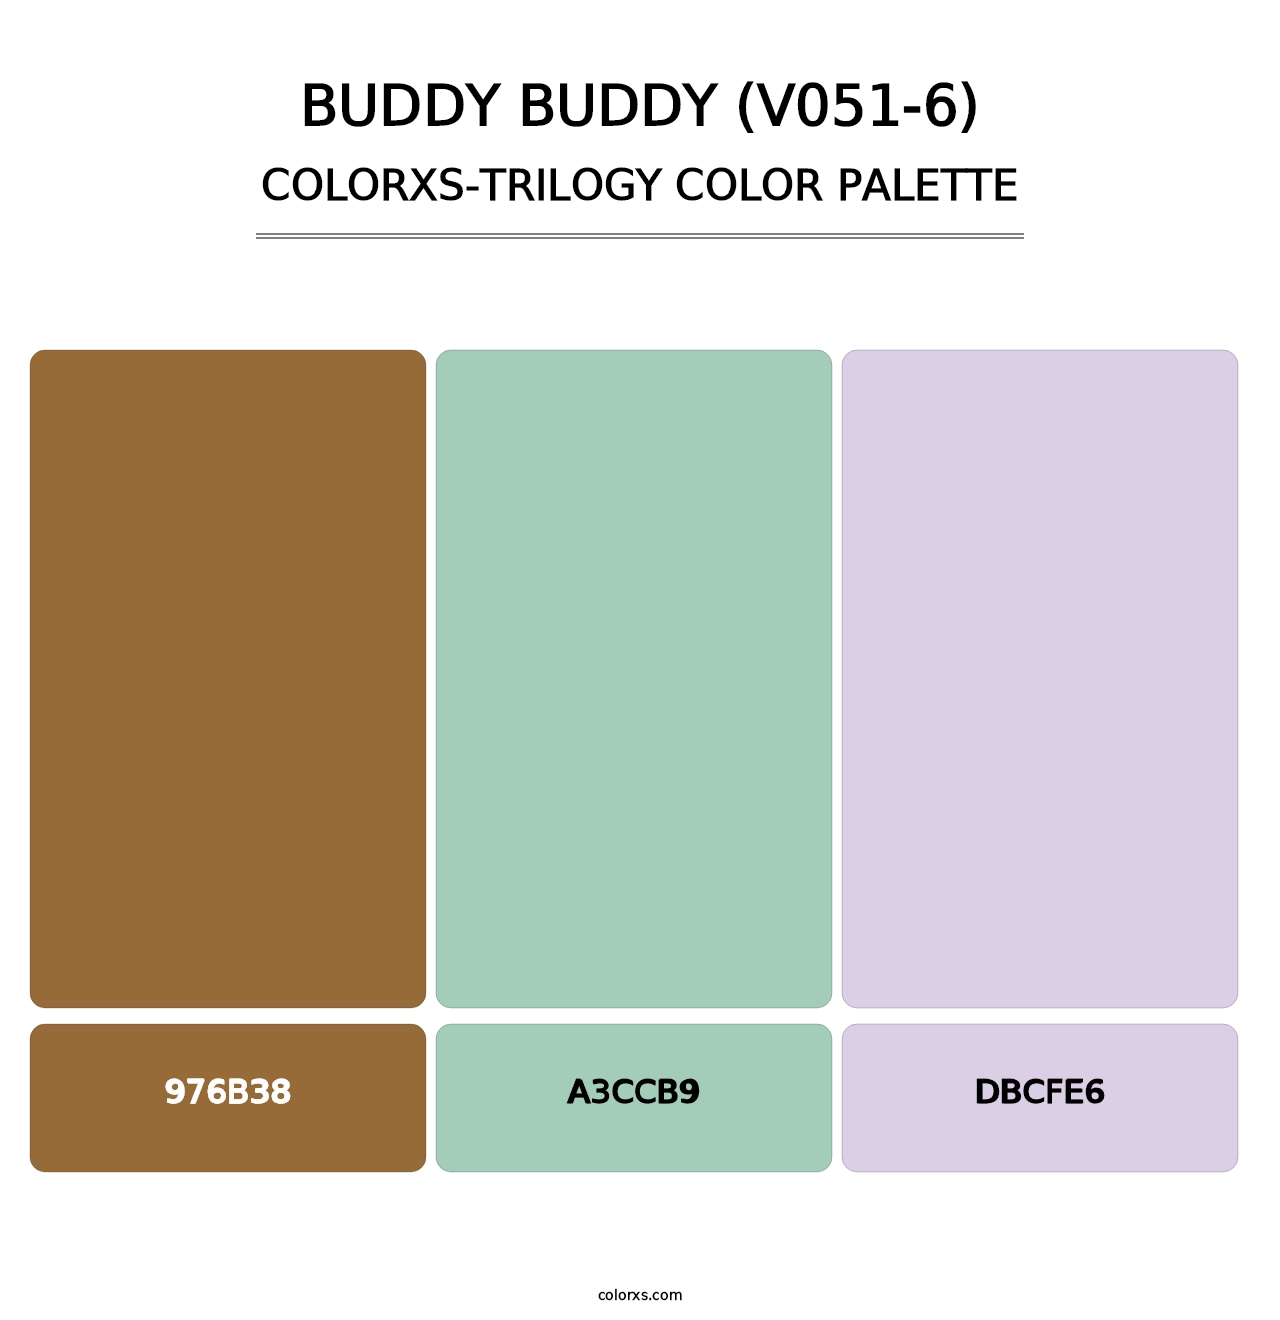 Buddy Buddy (V051-6) - Colorxs Trilogy Palette